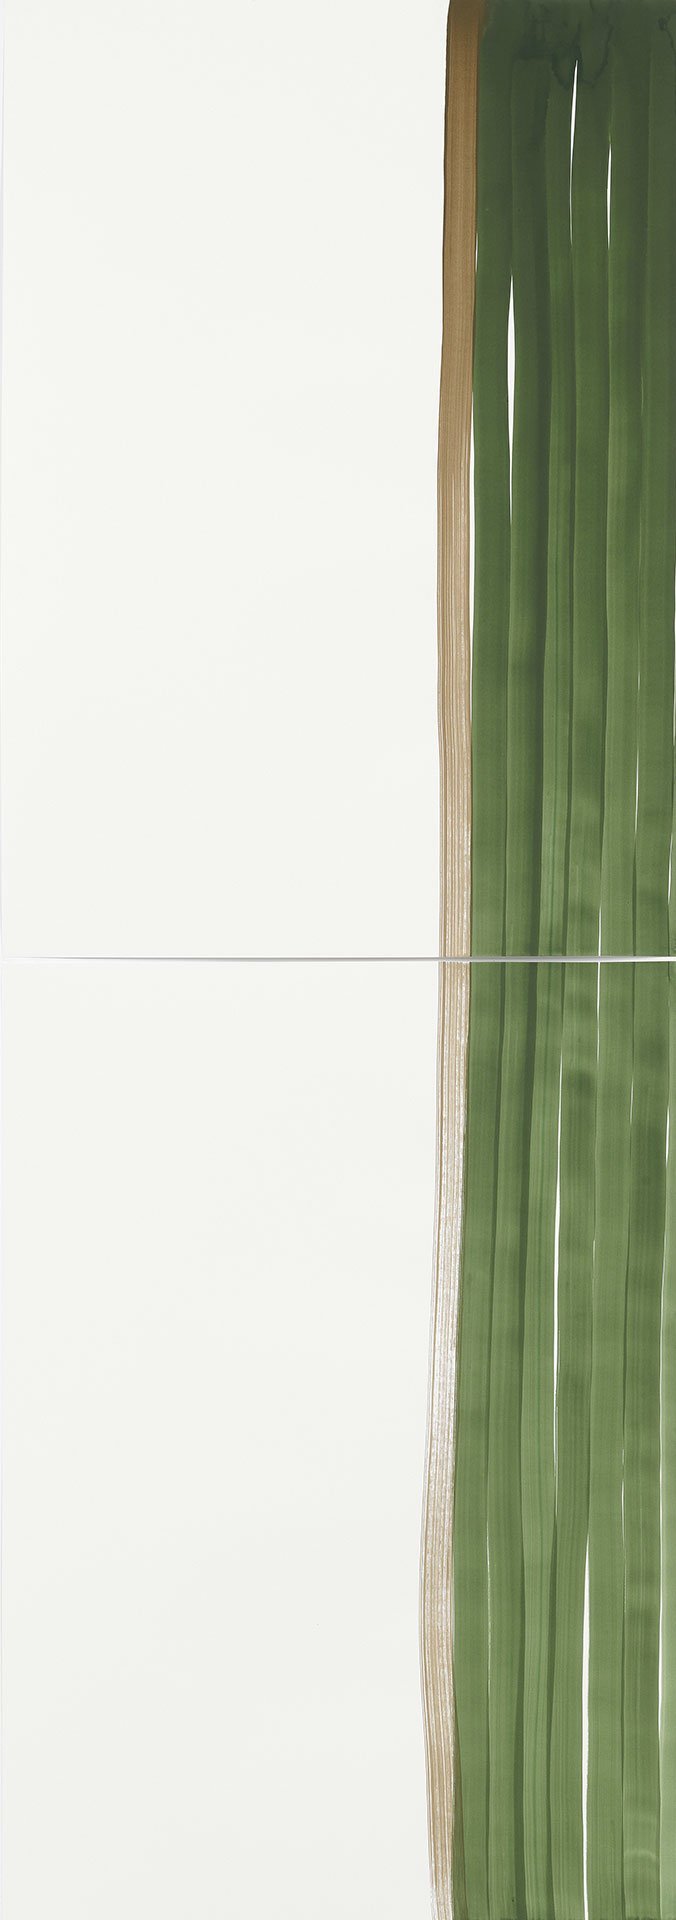 zwei Papierblätter auf denen rechts grüne Linien zu sehen sind.